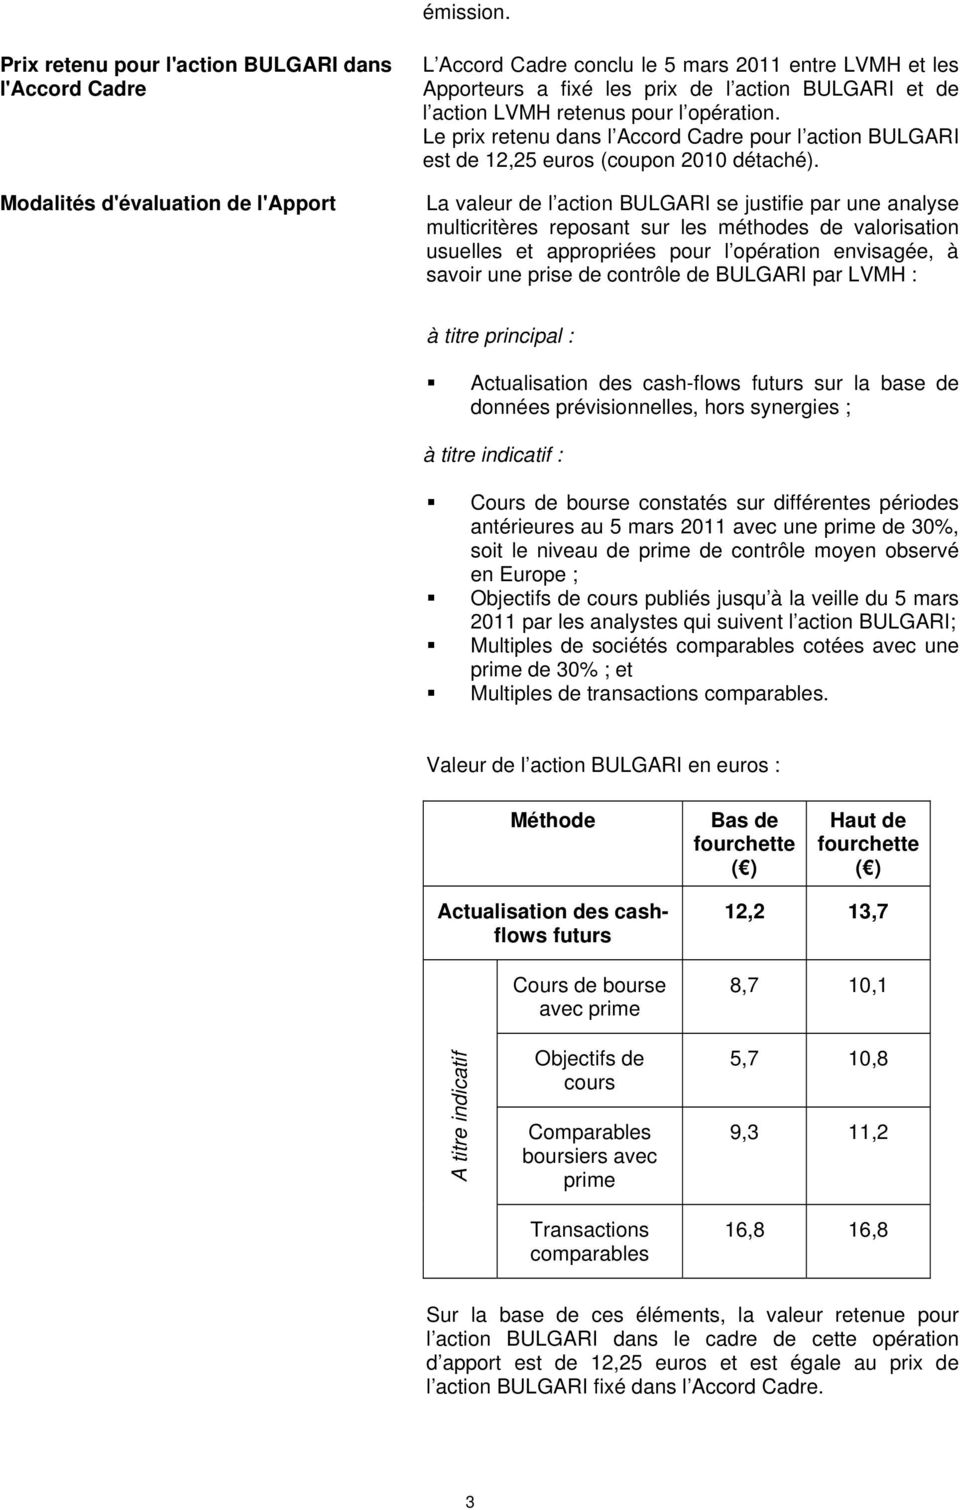 action LVMH retenus pour l opération. Le prix retenu dans l Accord Cadre pour l action BULGARI est de 12,25 euros (coupon 2010 détaché).